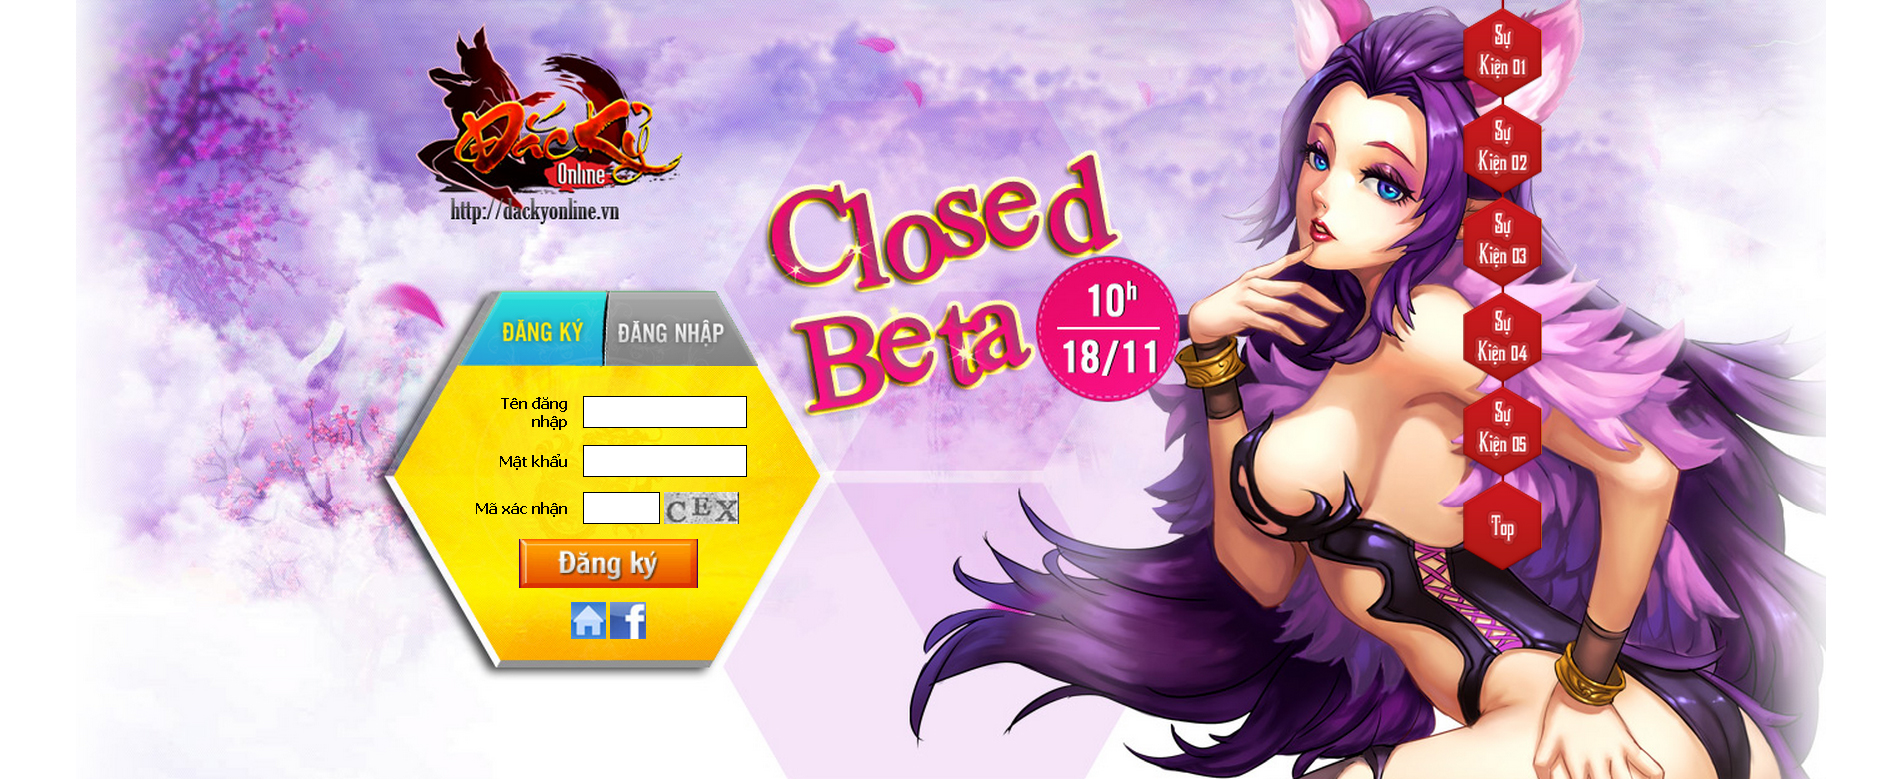 Đắc Kỷ Online ấn định Closed Beta chính thức vào 18/11